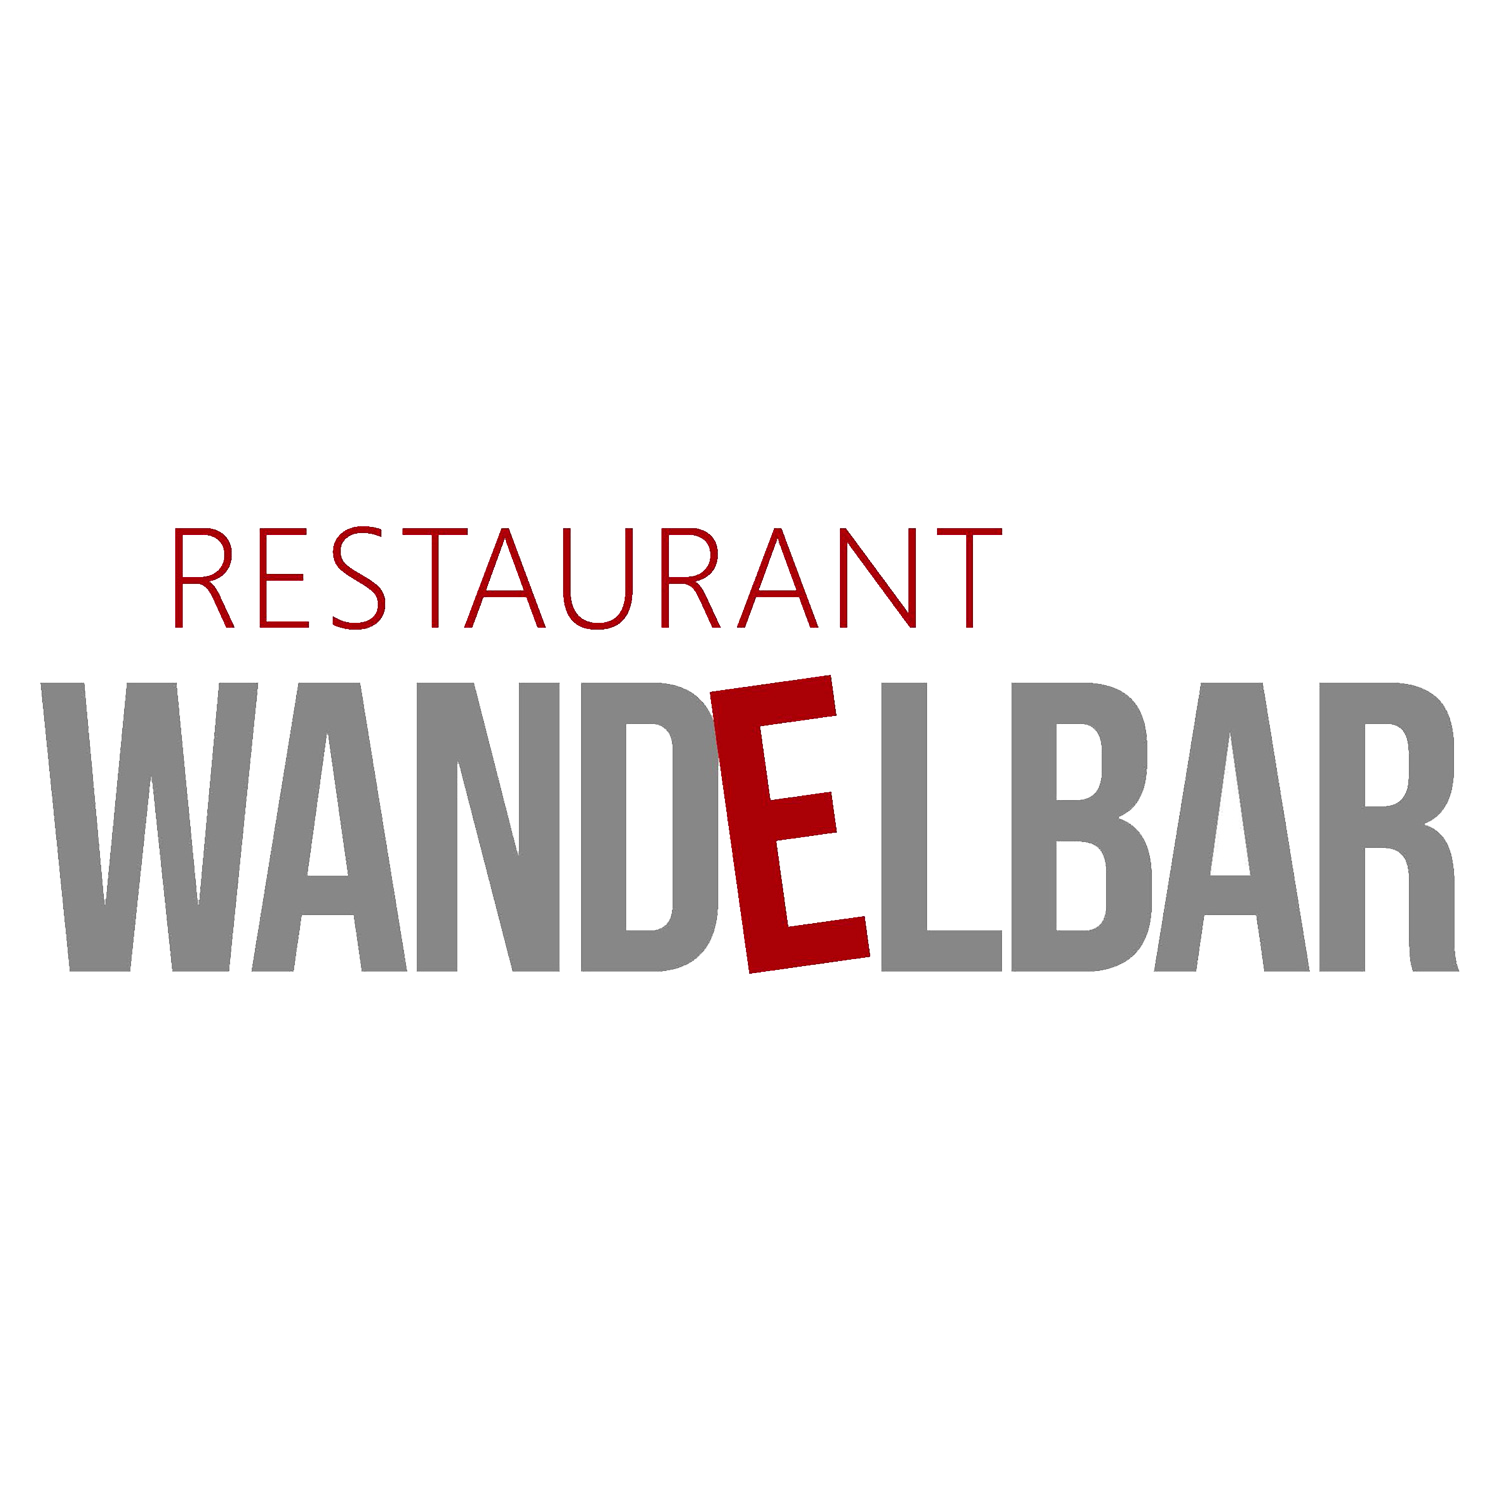 Restaurant Wandelbar Das à-la-carte-Restaurant Wandelbar befindet sich im 4-Sterne-Hotel Sonnenhügel in der Ostheide in Bad Bevensen und bietet ein kulinarisches Genuss-Erlebnis. Die Gastronomie ist nach ökologischen und nachhaltigen Gesichtspunkten ausge